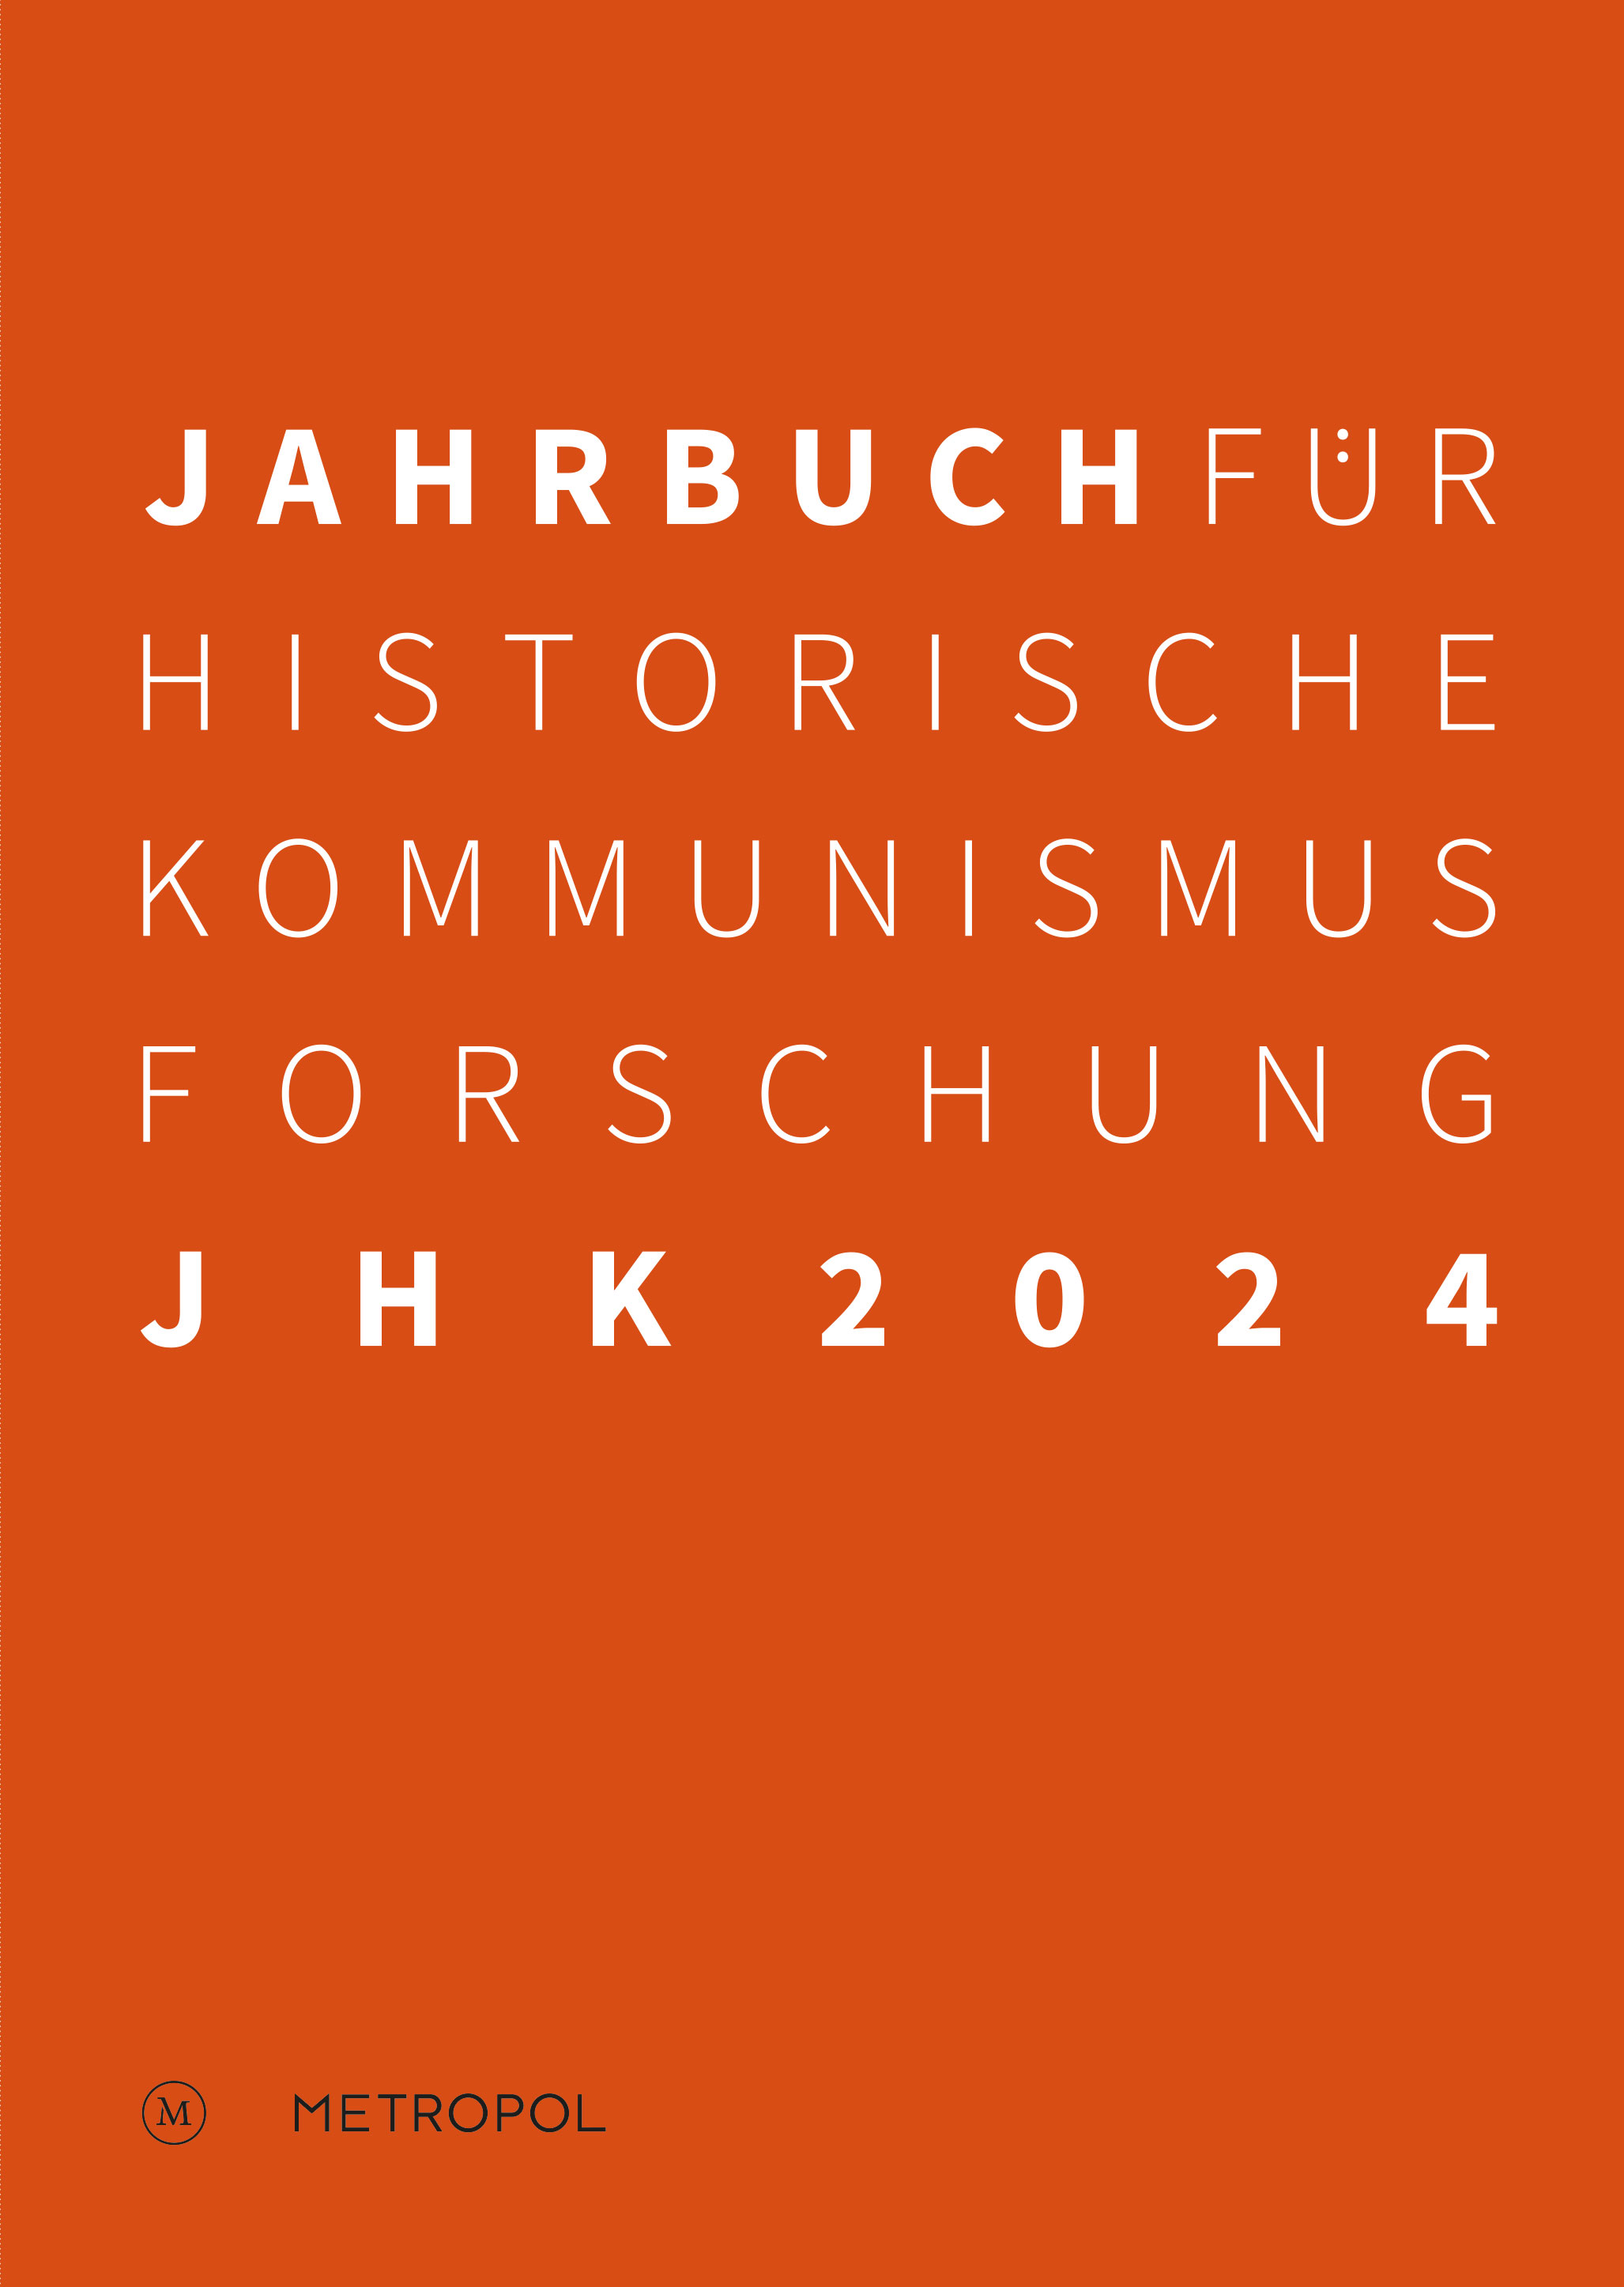 Cover des Jahrbuchs für Historische Kommunismuforschung mit Titel als Aufschrift